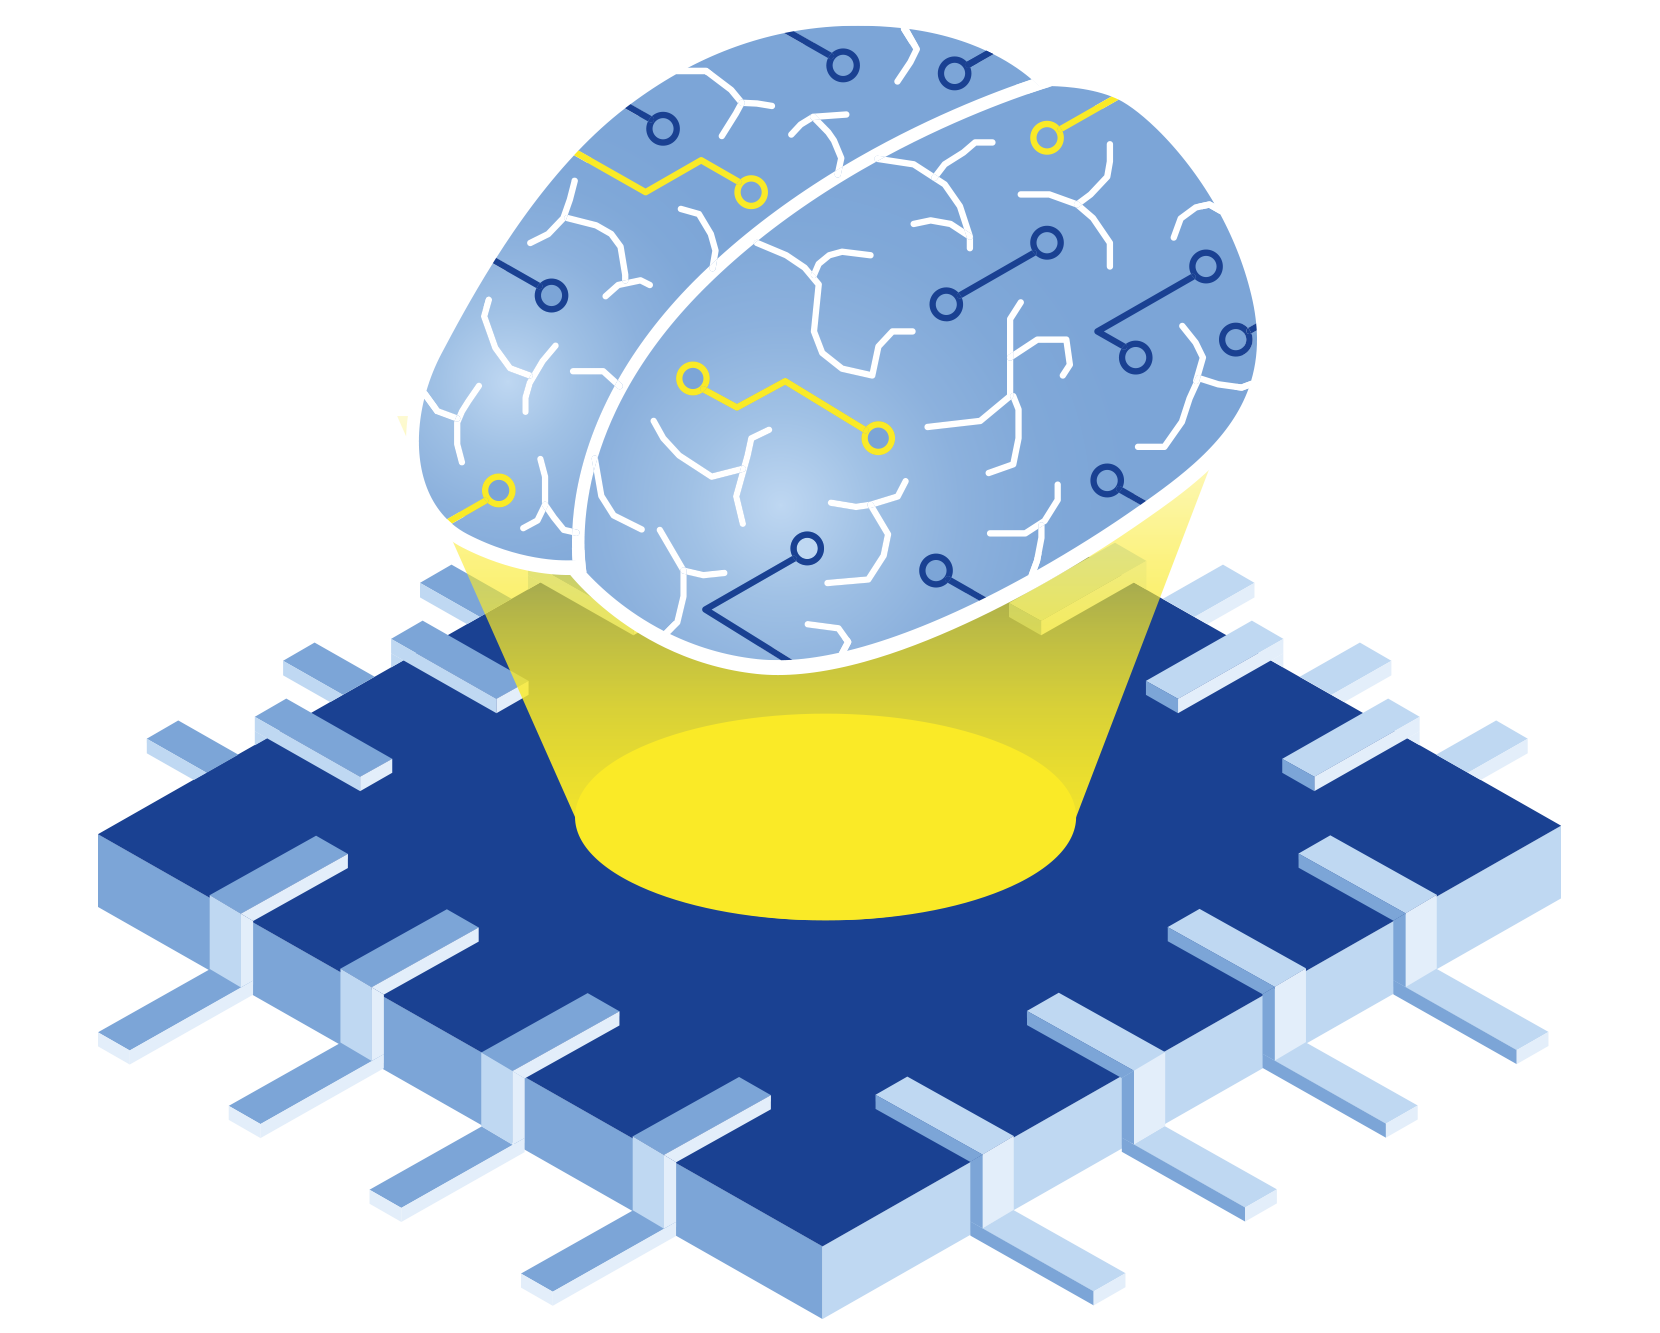 Isometrische Illustration eines Computerchips mit einem Gehirn